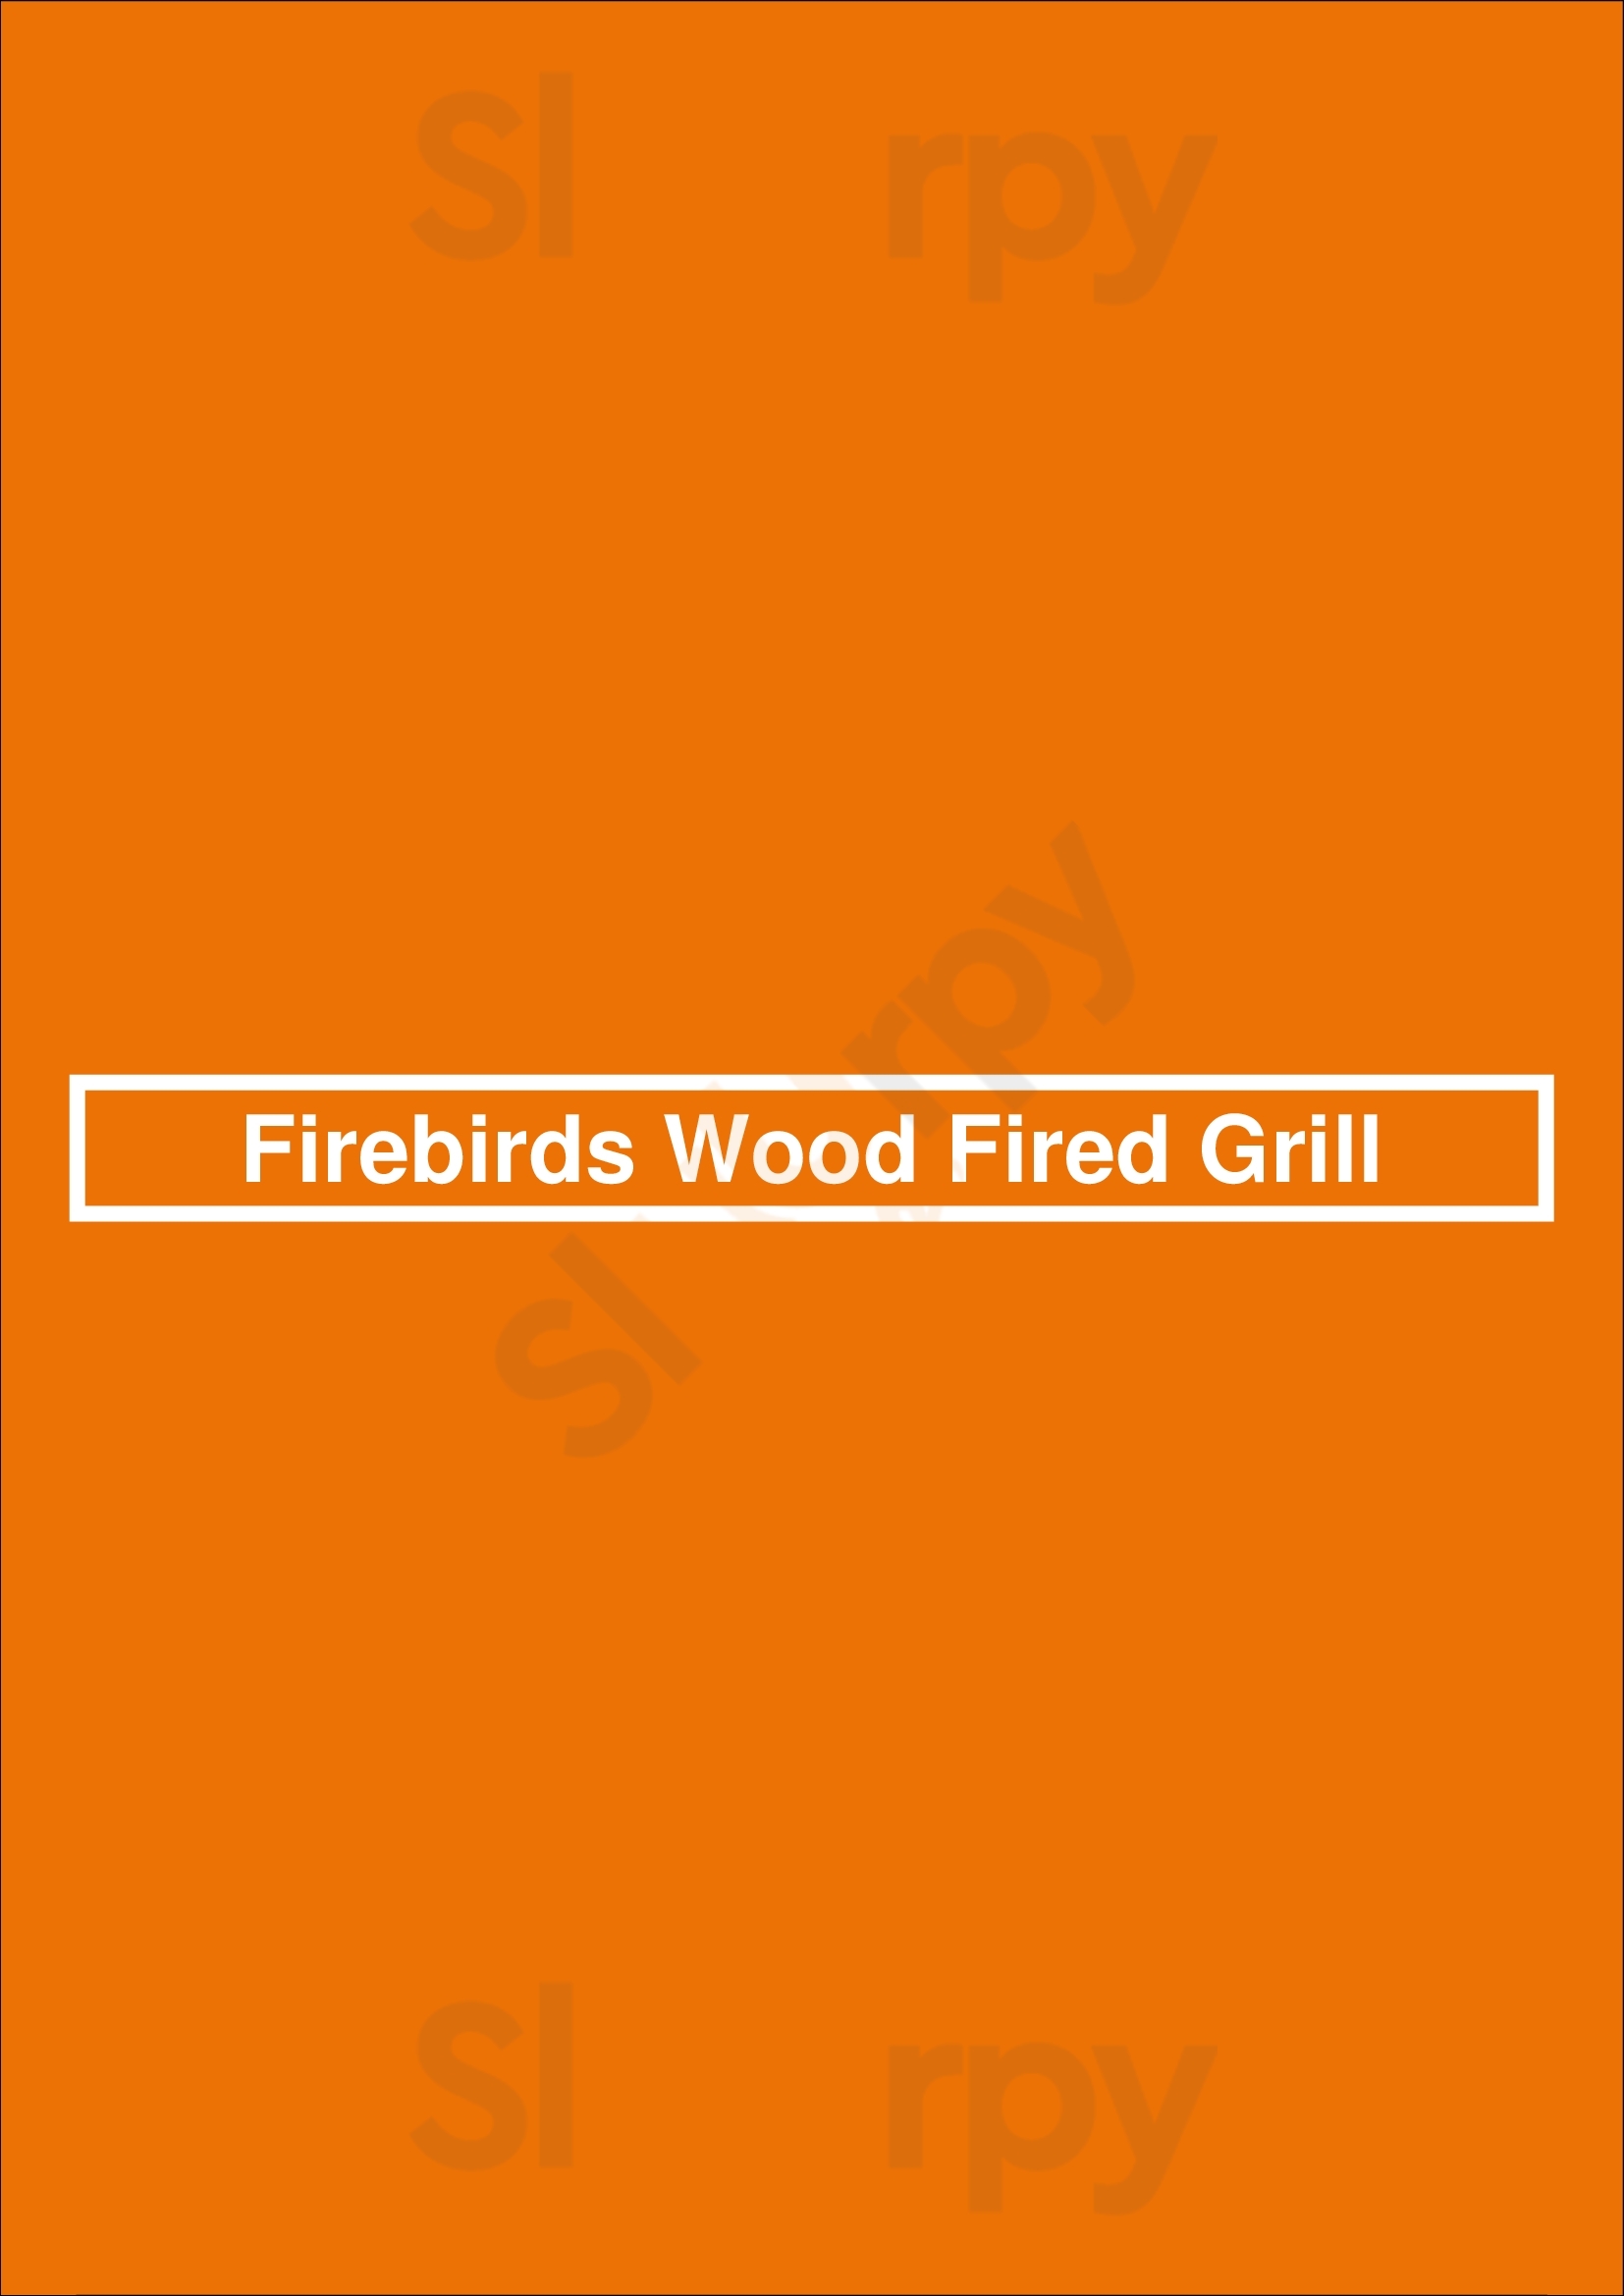 Firebirds Wood Fired Grill Newark Menu - 1